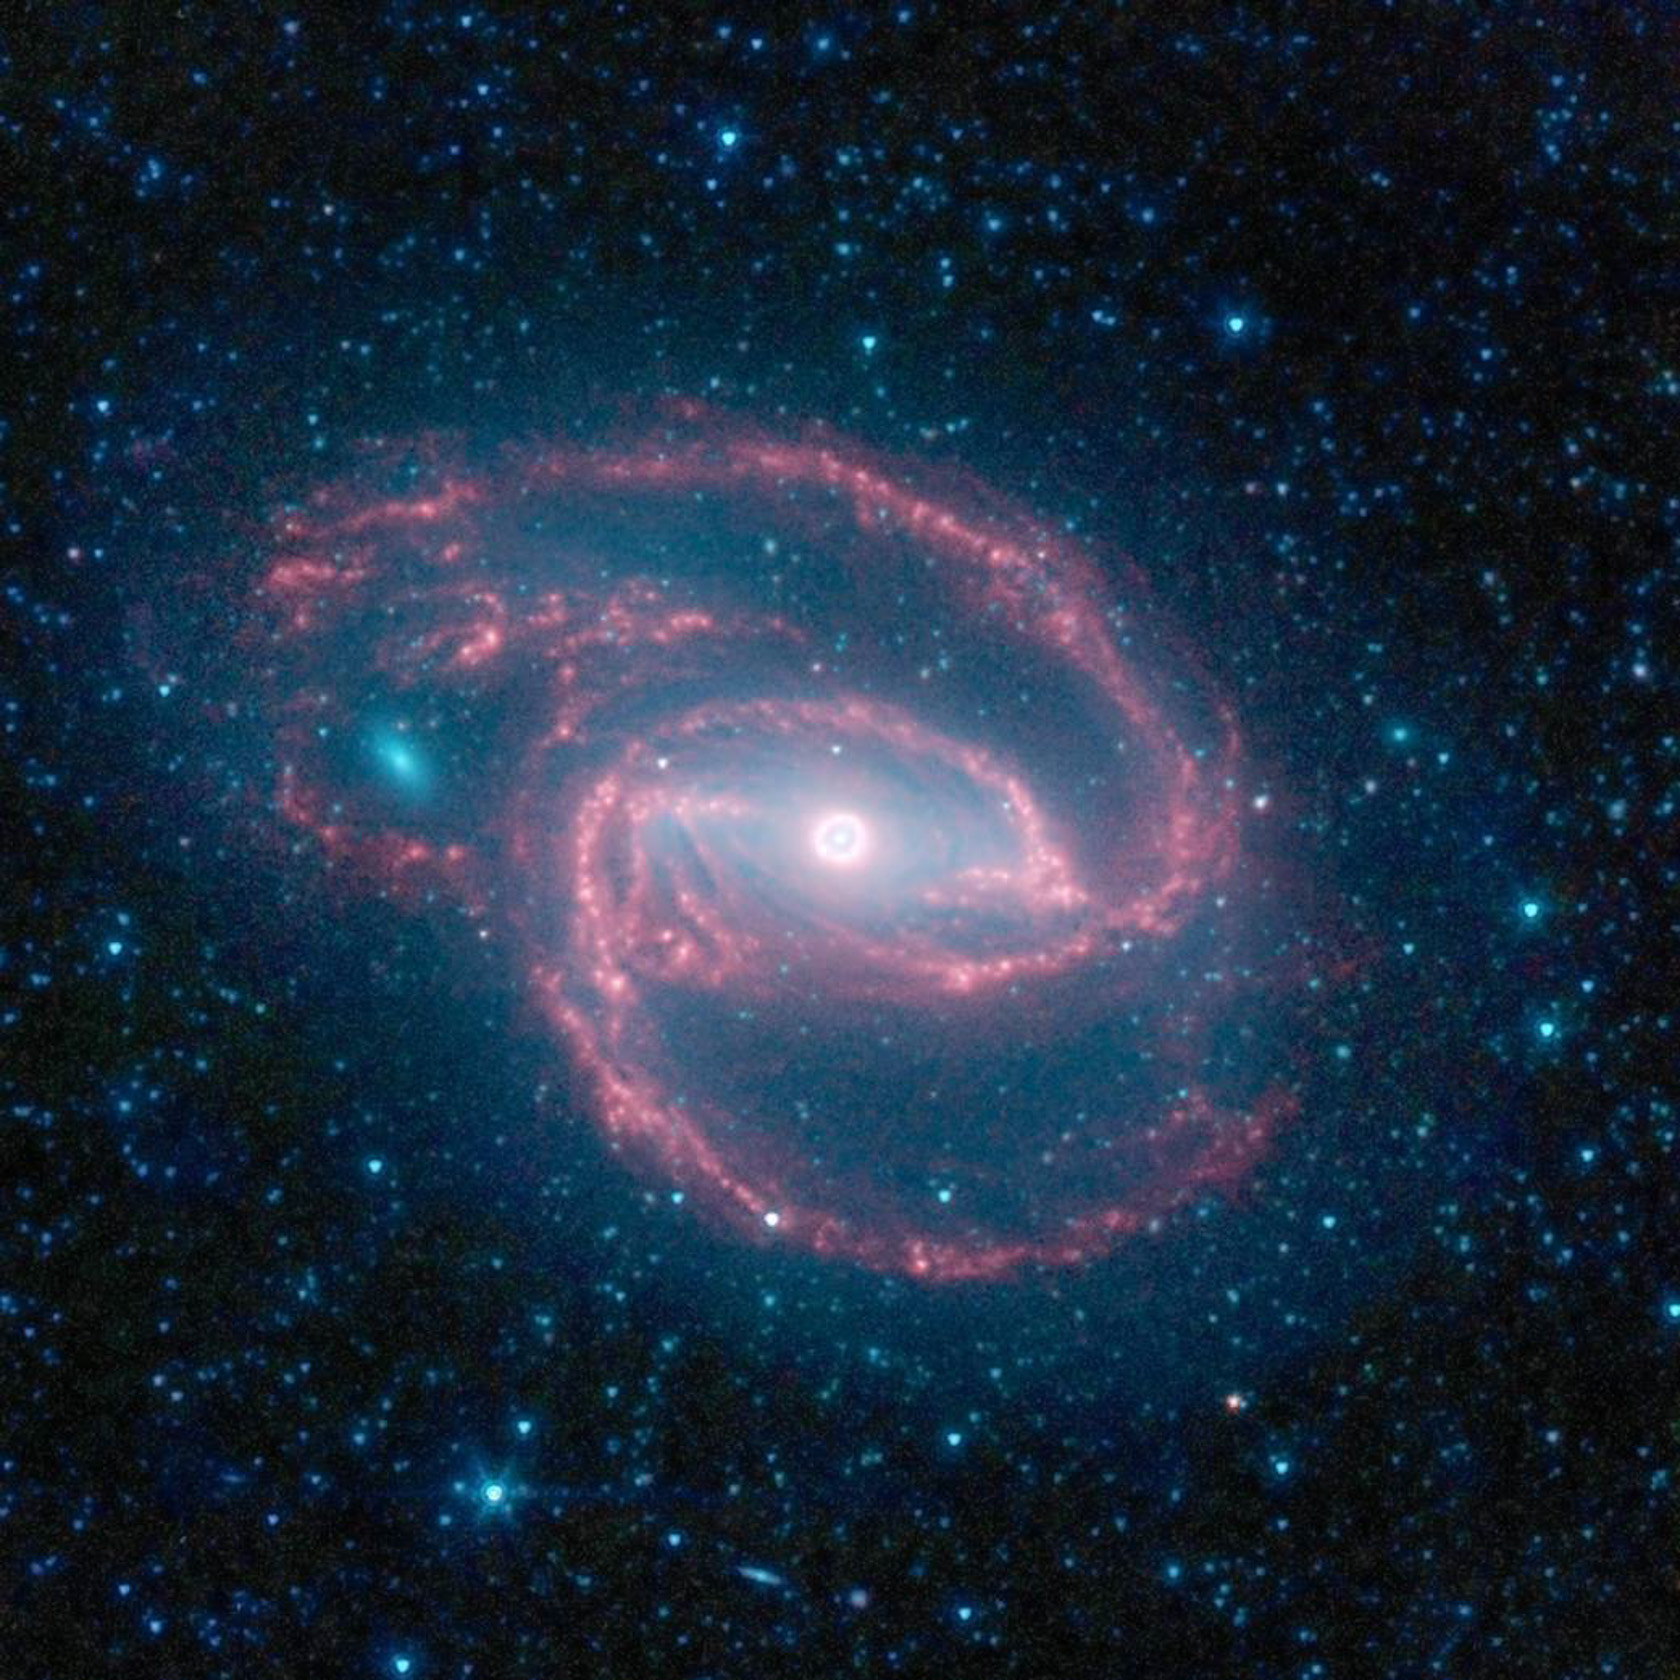 L'Oggetto di Hoag, conosciuta come galassia ad anello, è una galassia dalla forma particolare, la cui struttura ha appassionato molti astronomi. Venne scoperta da Arthur Allen Hoag nel 1950, che la classificò come una nebulosa planetaria o una galassia di forma peculiare